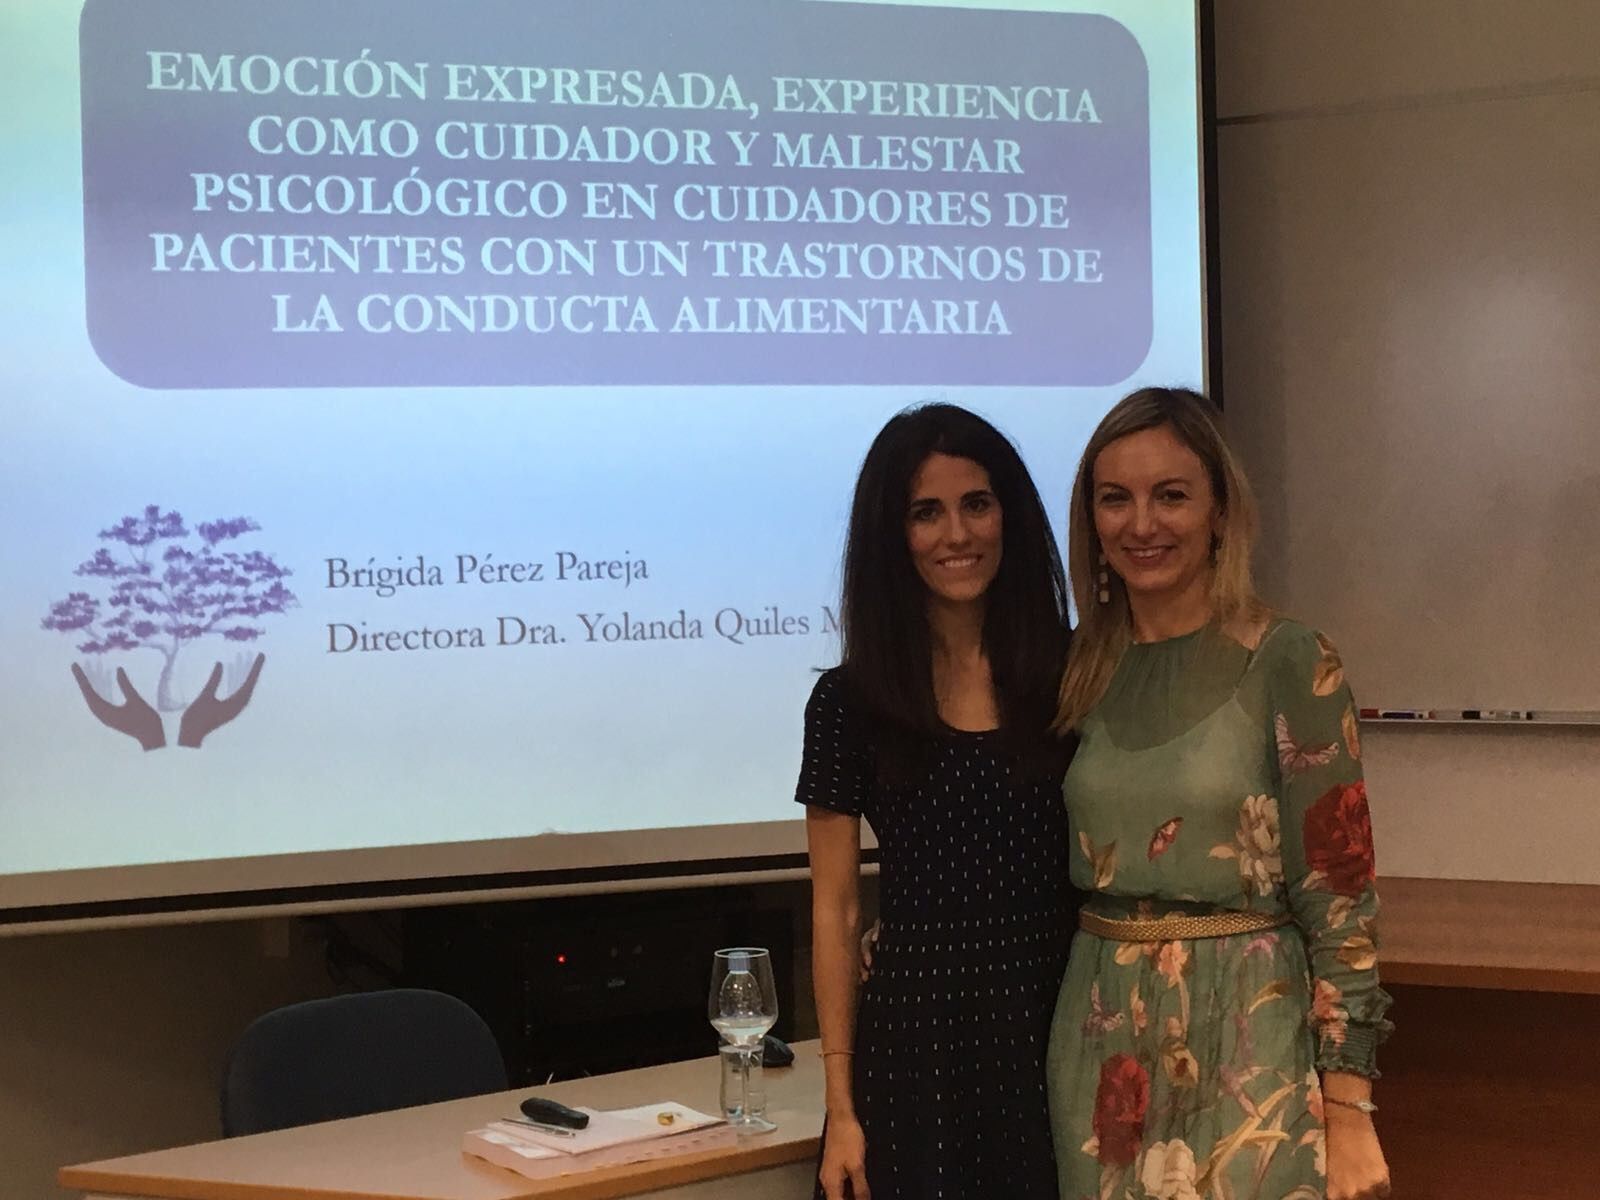 Brígida Pérez y Yolanda Quiles, autora y directora de la tesis sobre cuidadores de pacientes con trastornos de conducta alimentaria.